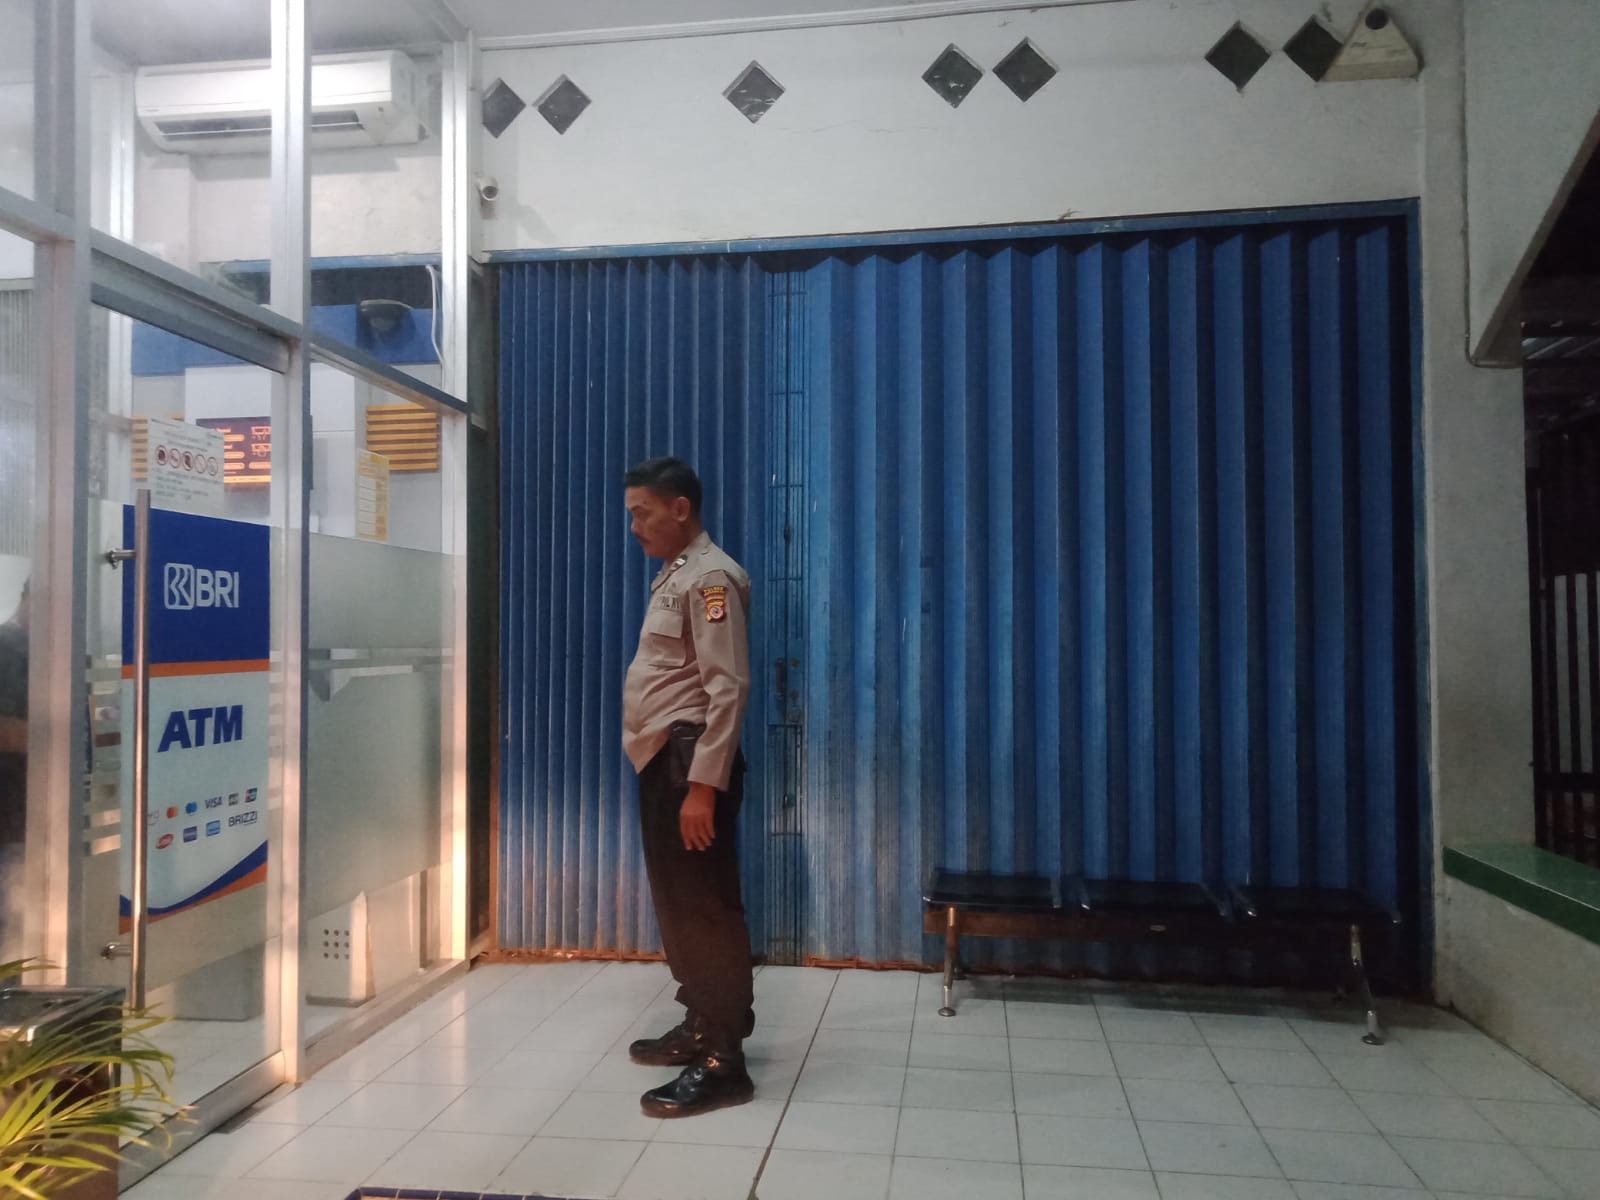 Personel Polsek Tukdana Patroli ke Mesin ATM Cegah Kejahatan Perbankan